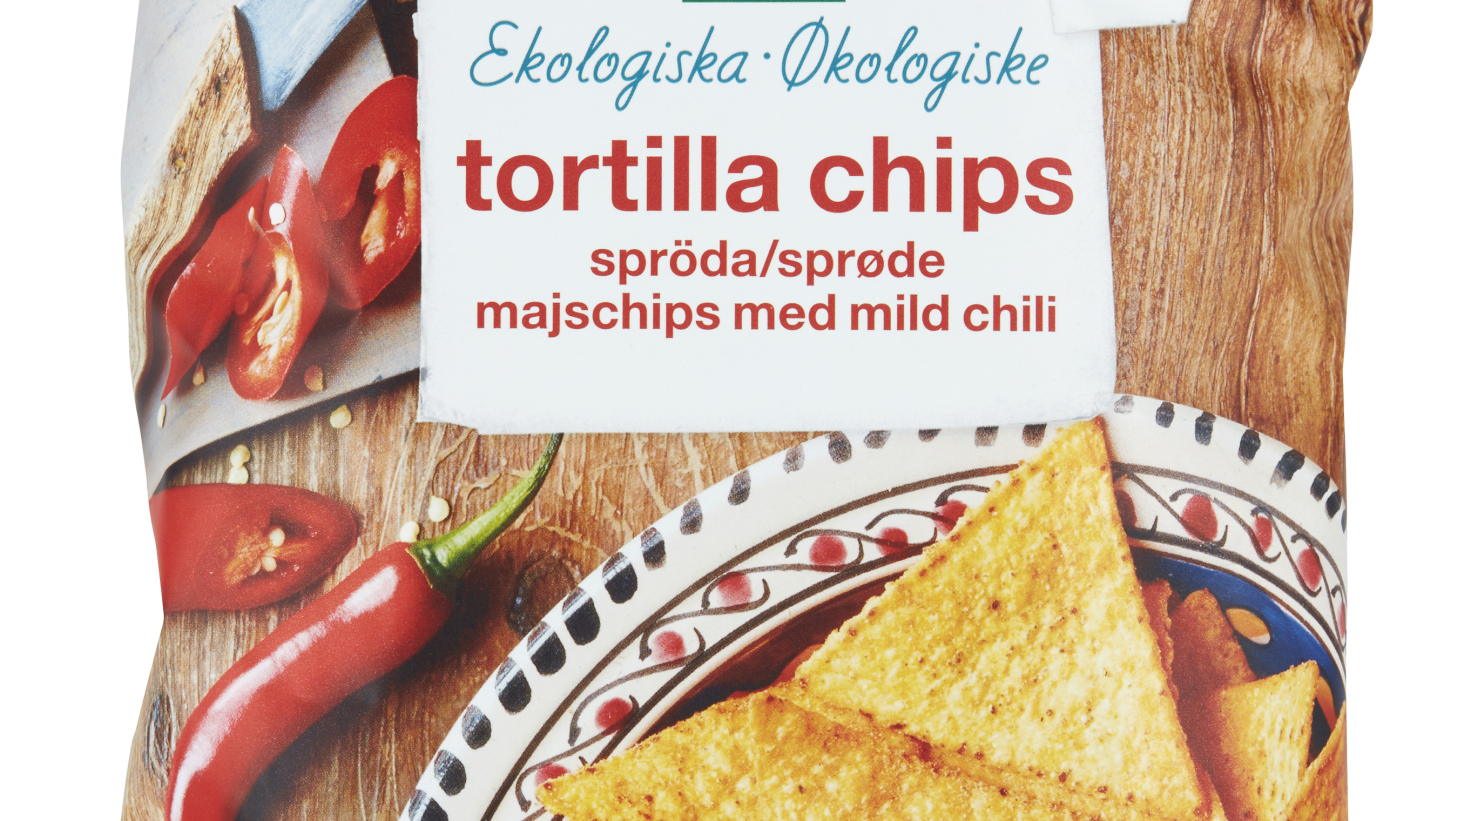 Coop återkallar Änglamark tortillachips med mild chili